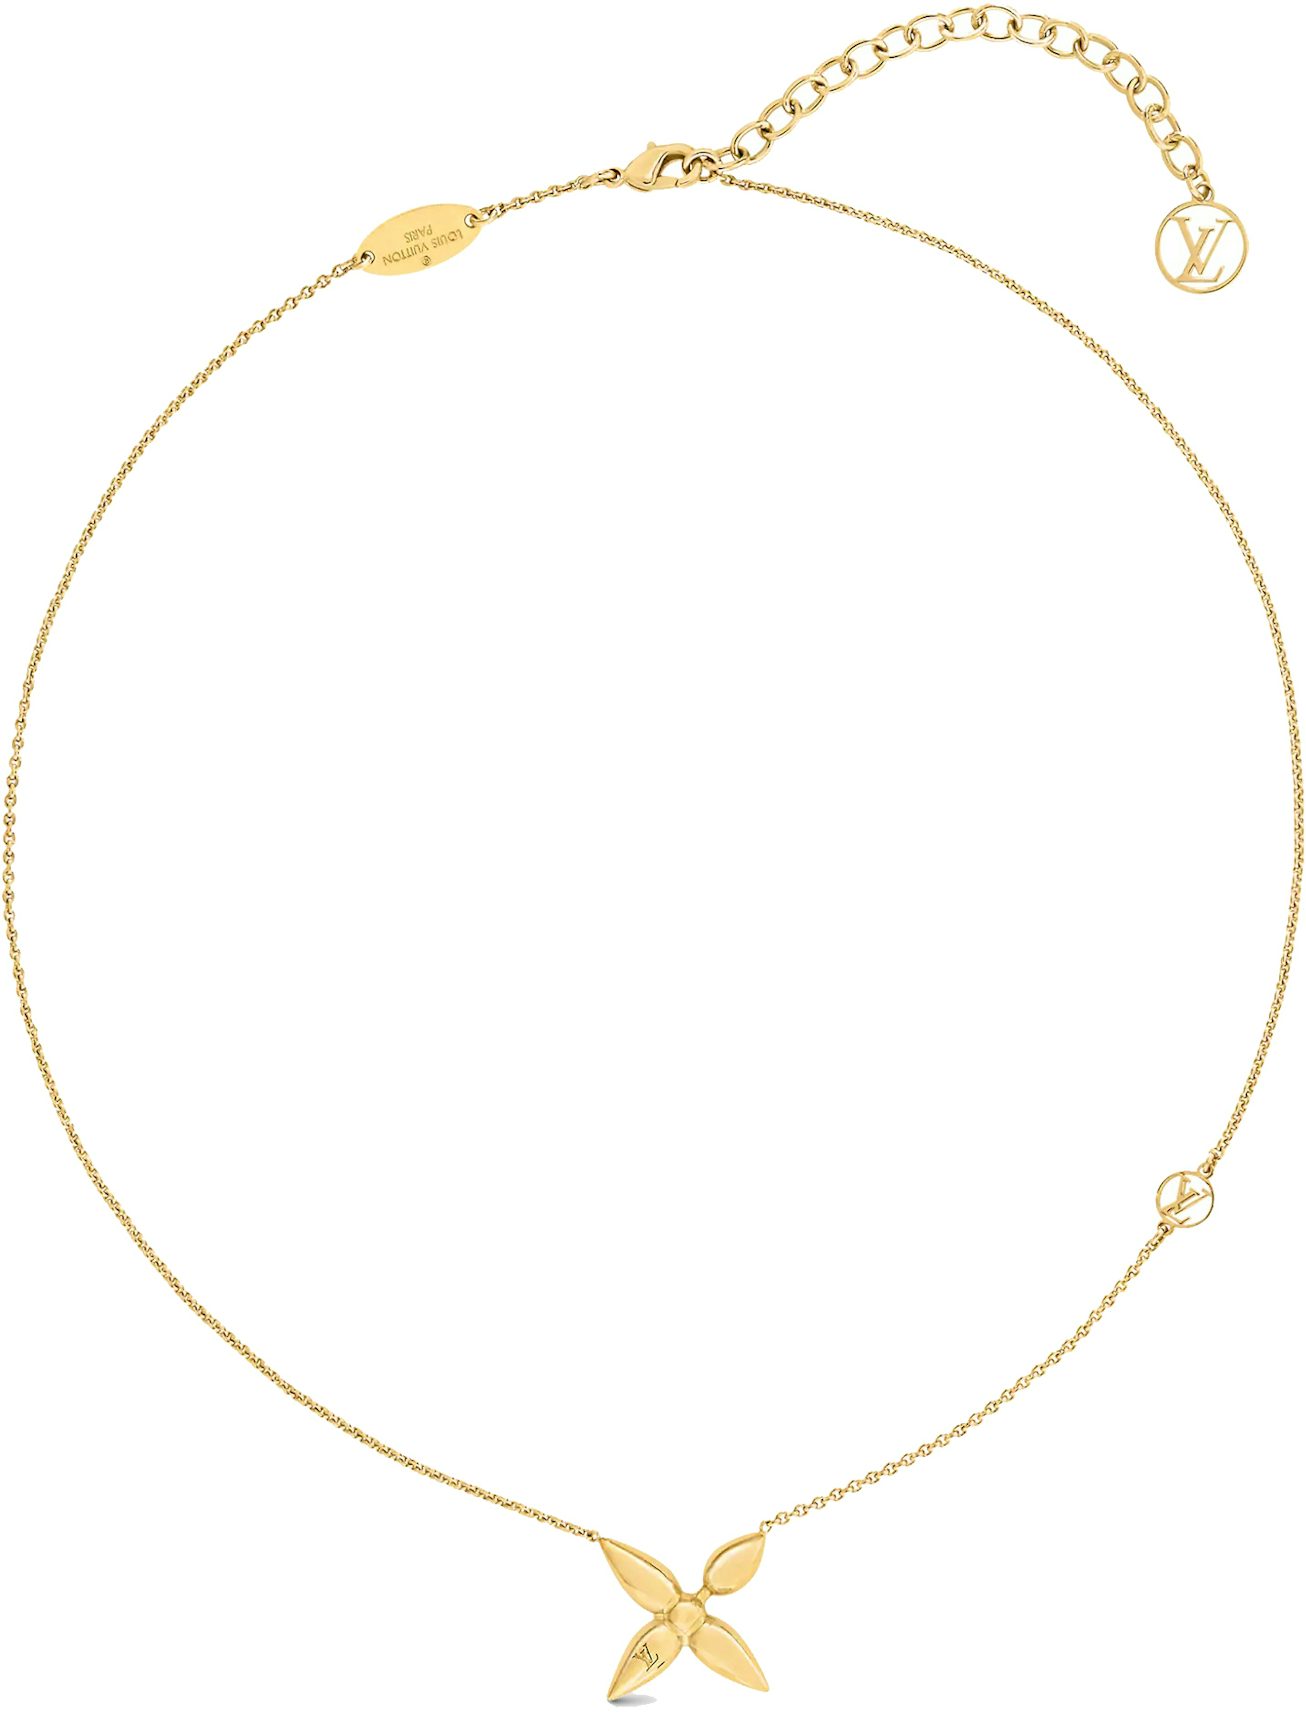 louis-vuitton gold necklace